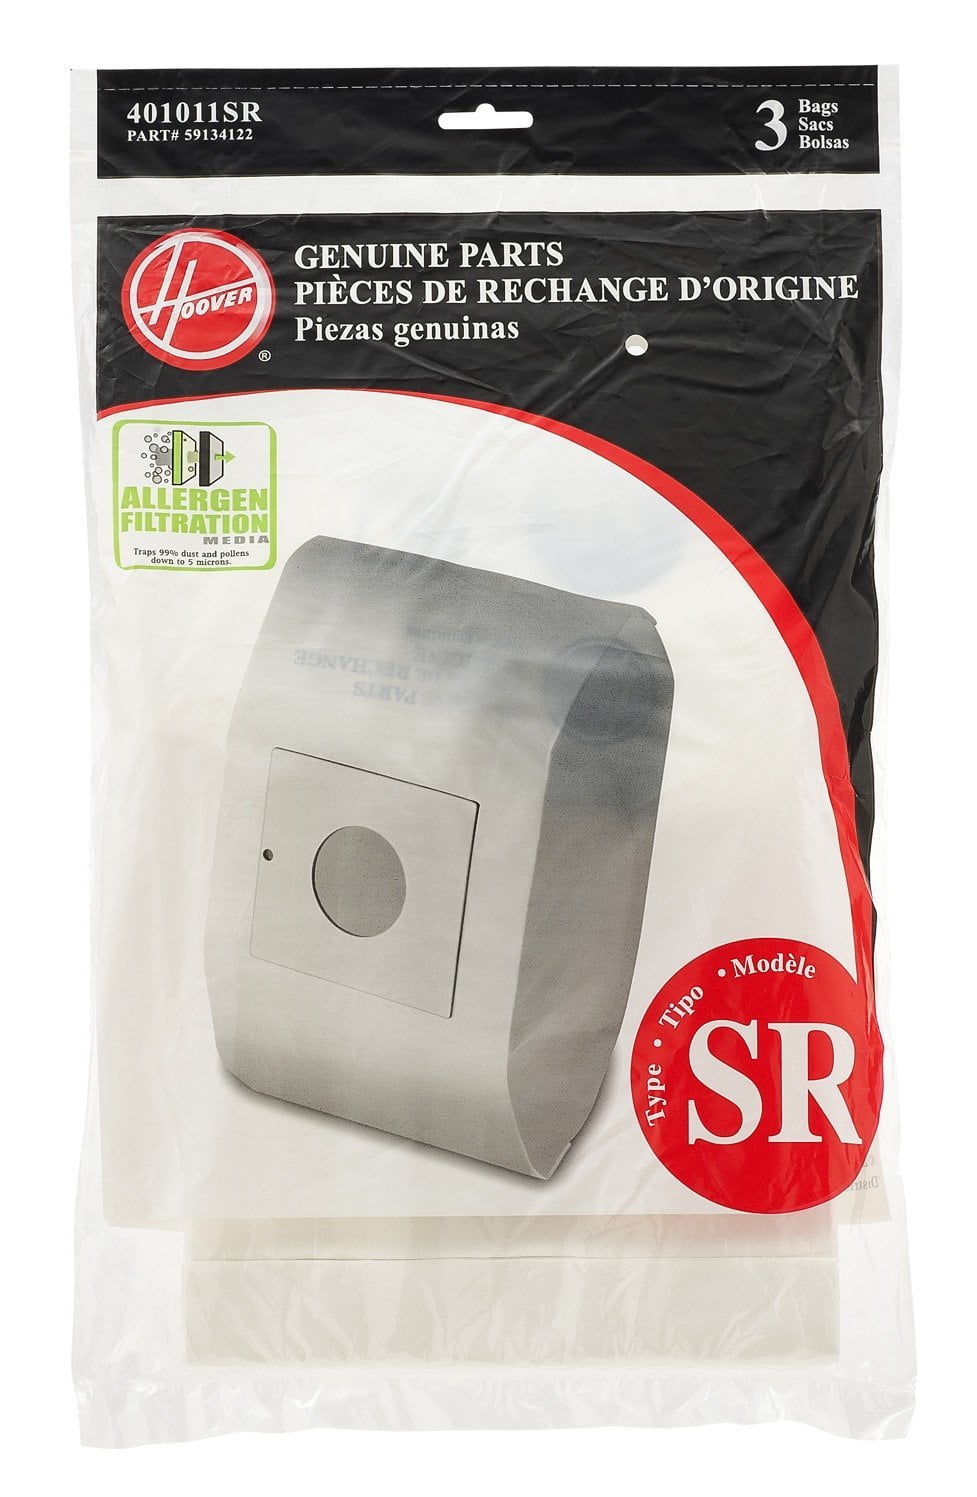 Hoover Canister Vacuum Allergen Filtration Type SR Bags 3 Pk Part # 401011SR 